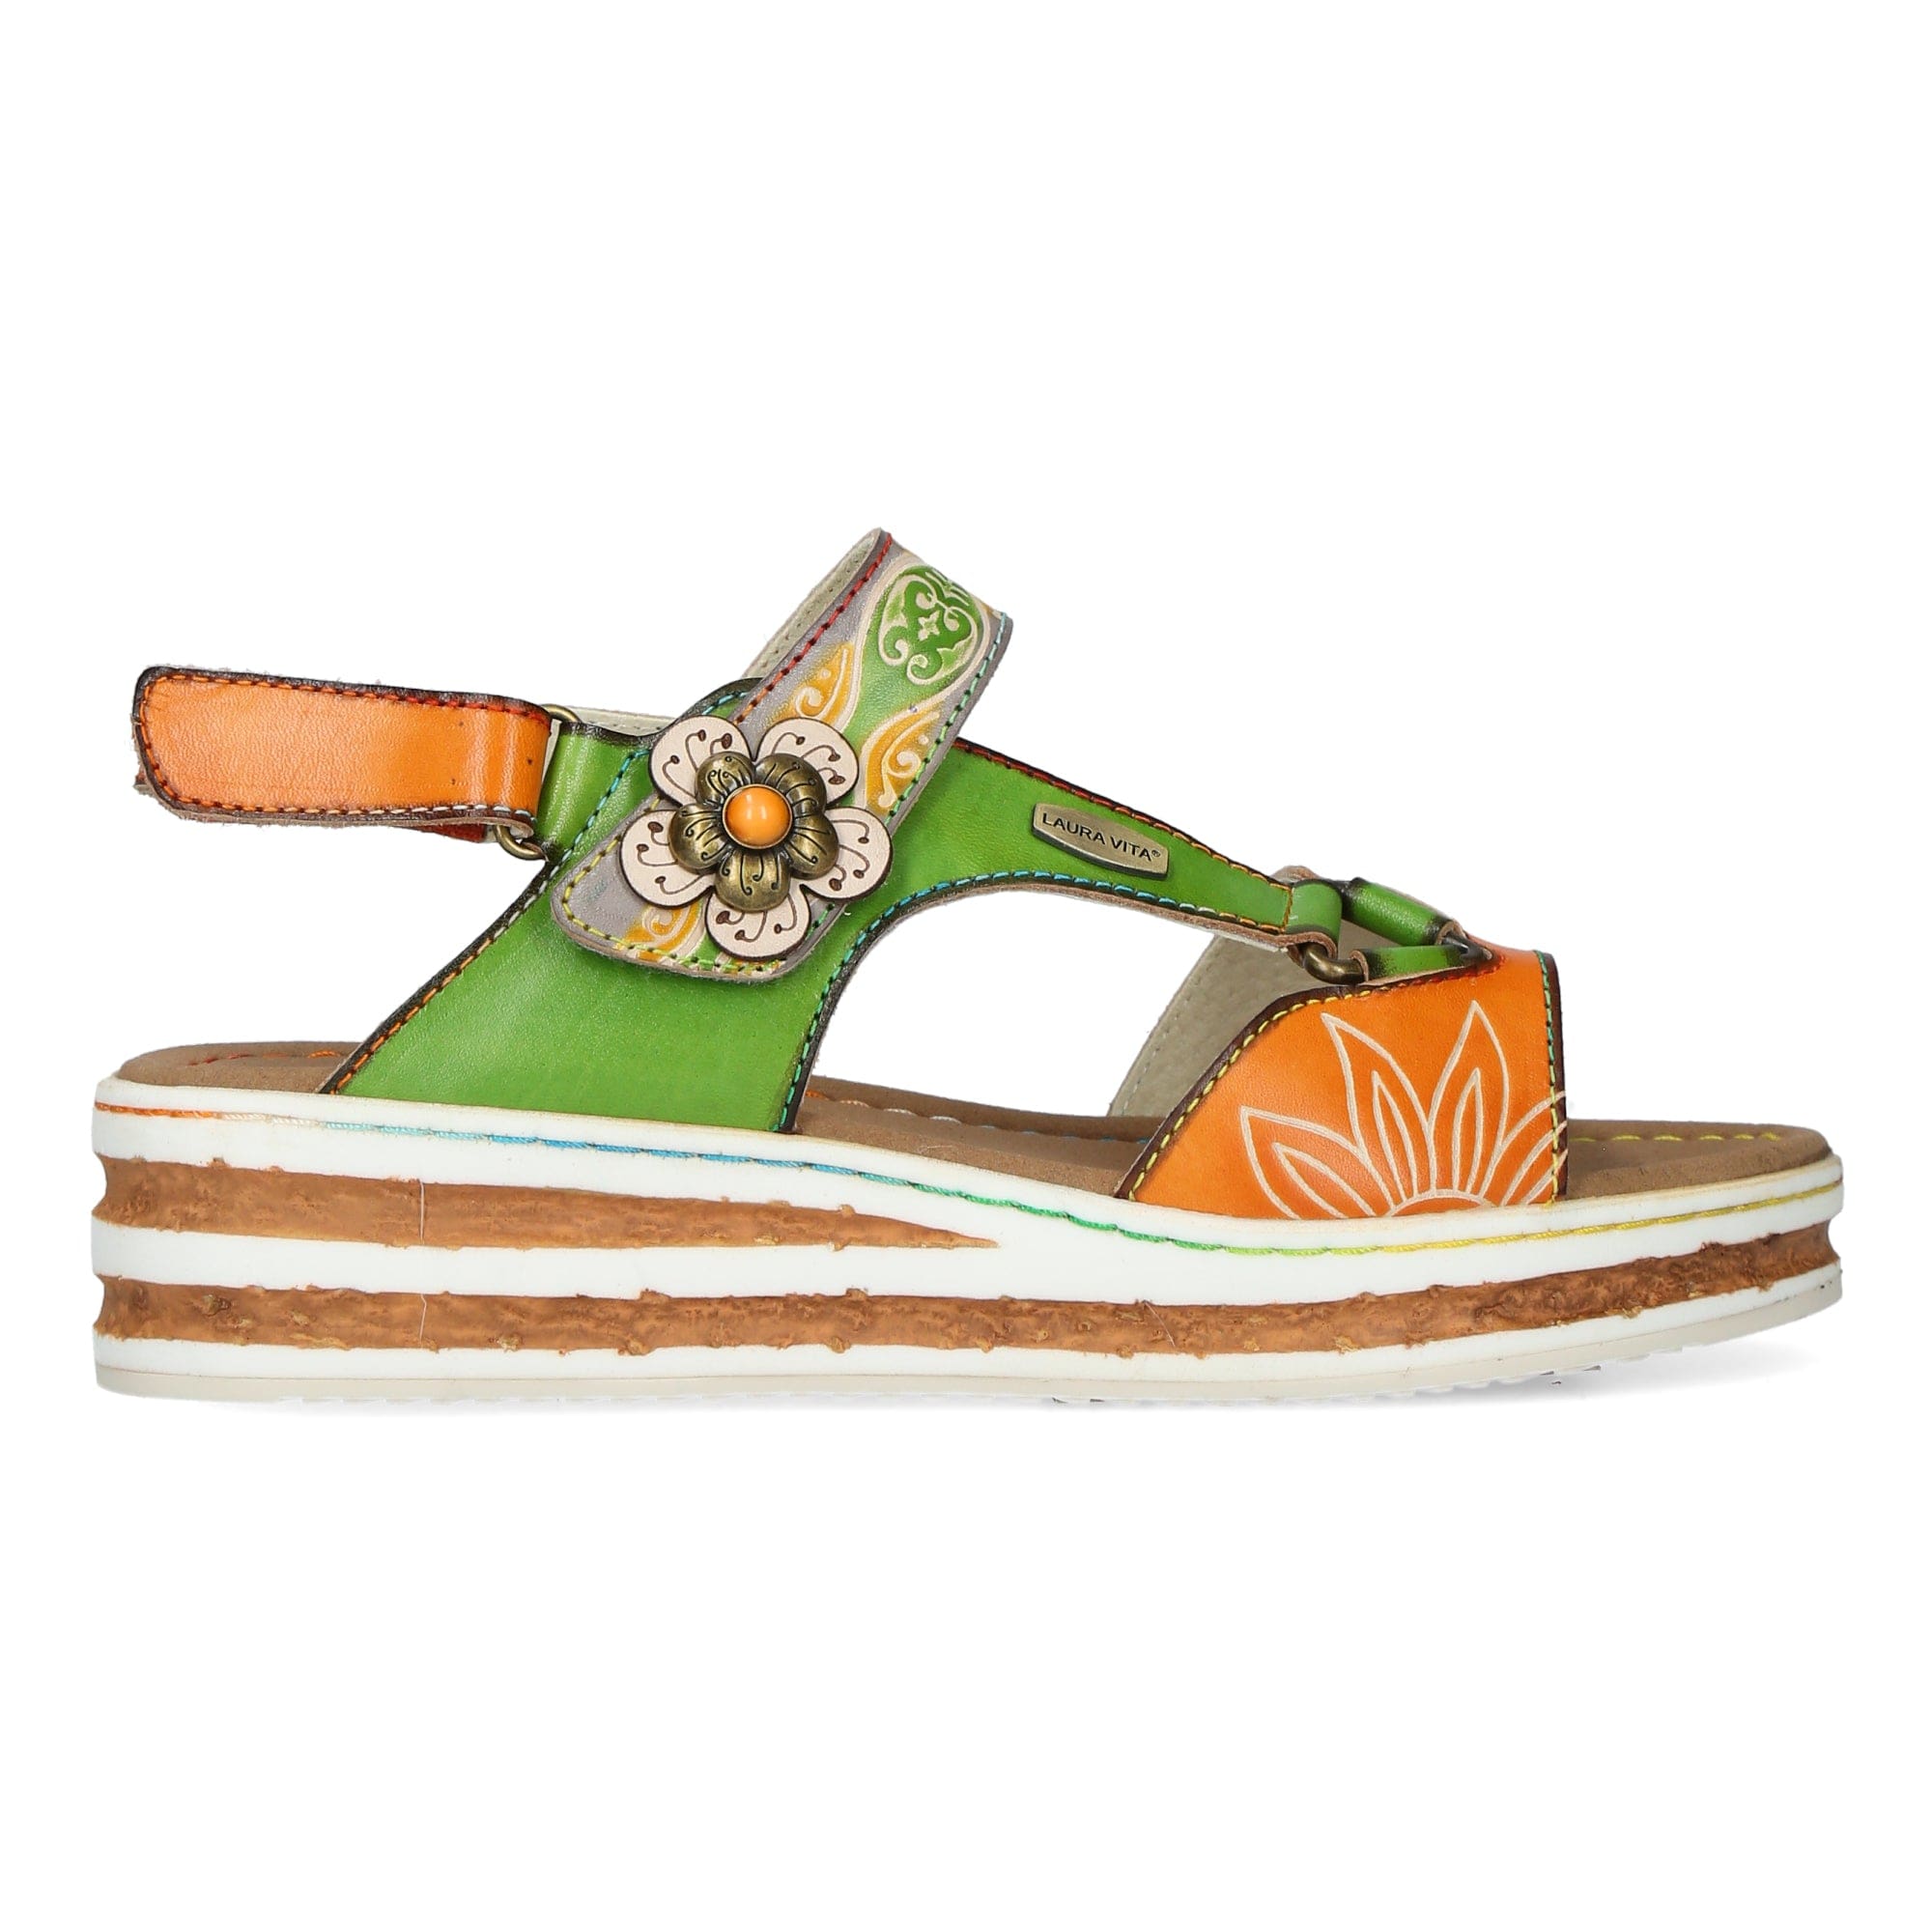 Scarpa DICEZEO 0623 - 35 / Verde - Sandalo